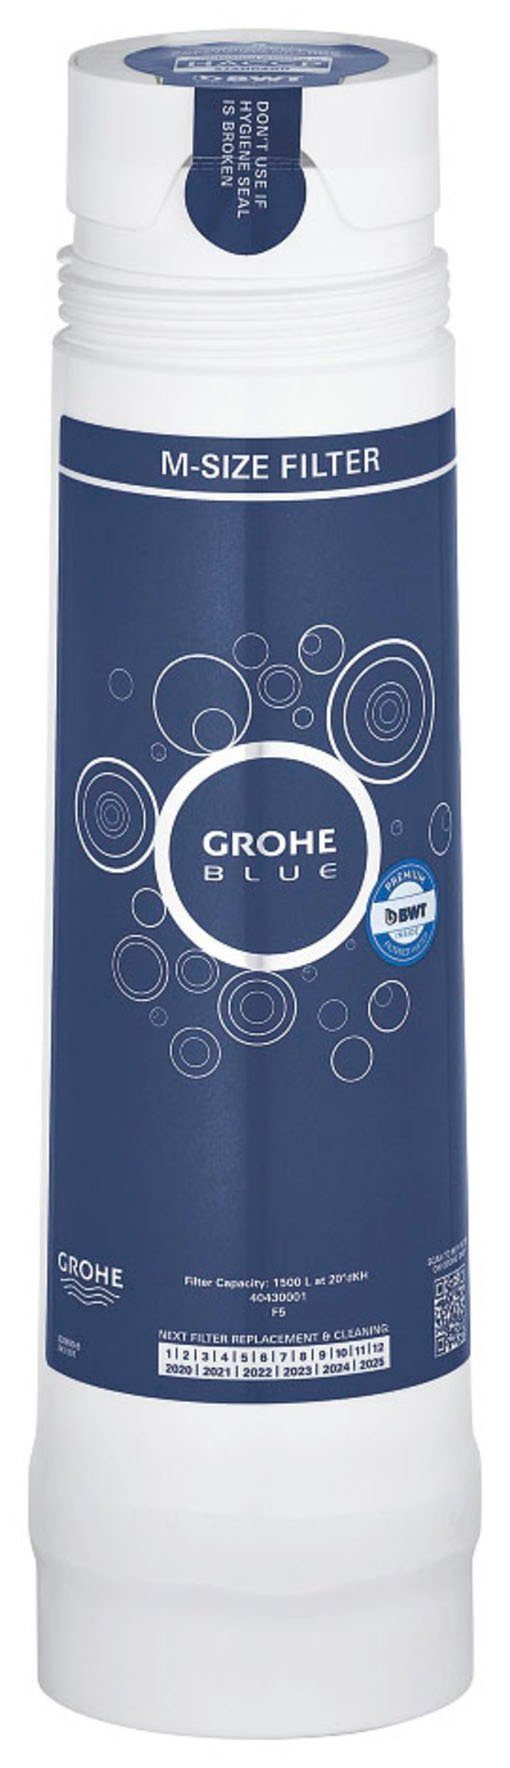 Grohe Blue, Kalk Schwermetalle reduziert Wasserfilter und